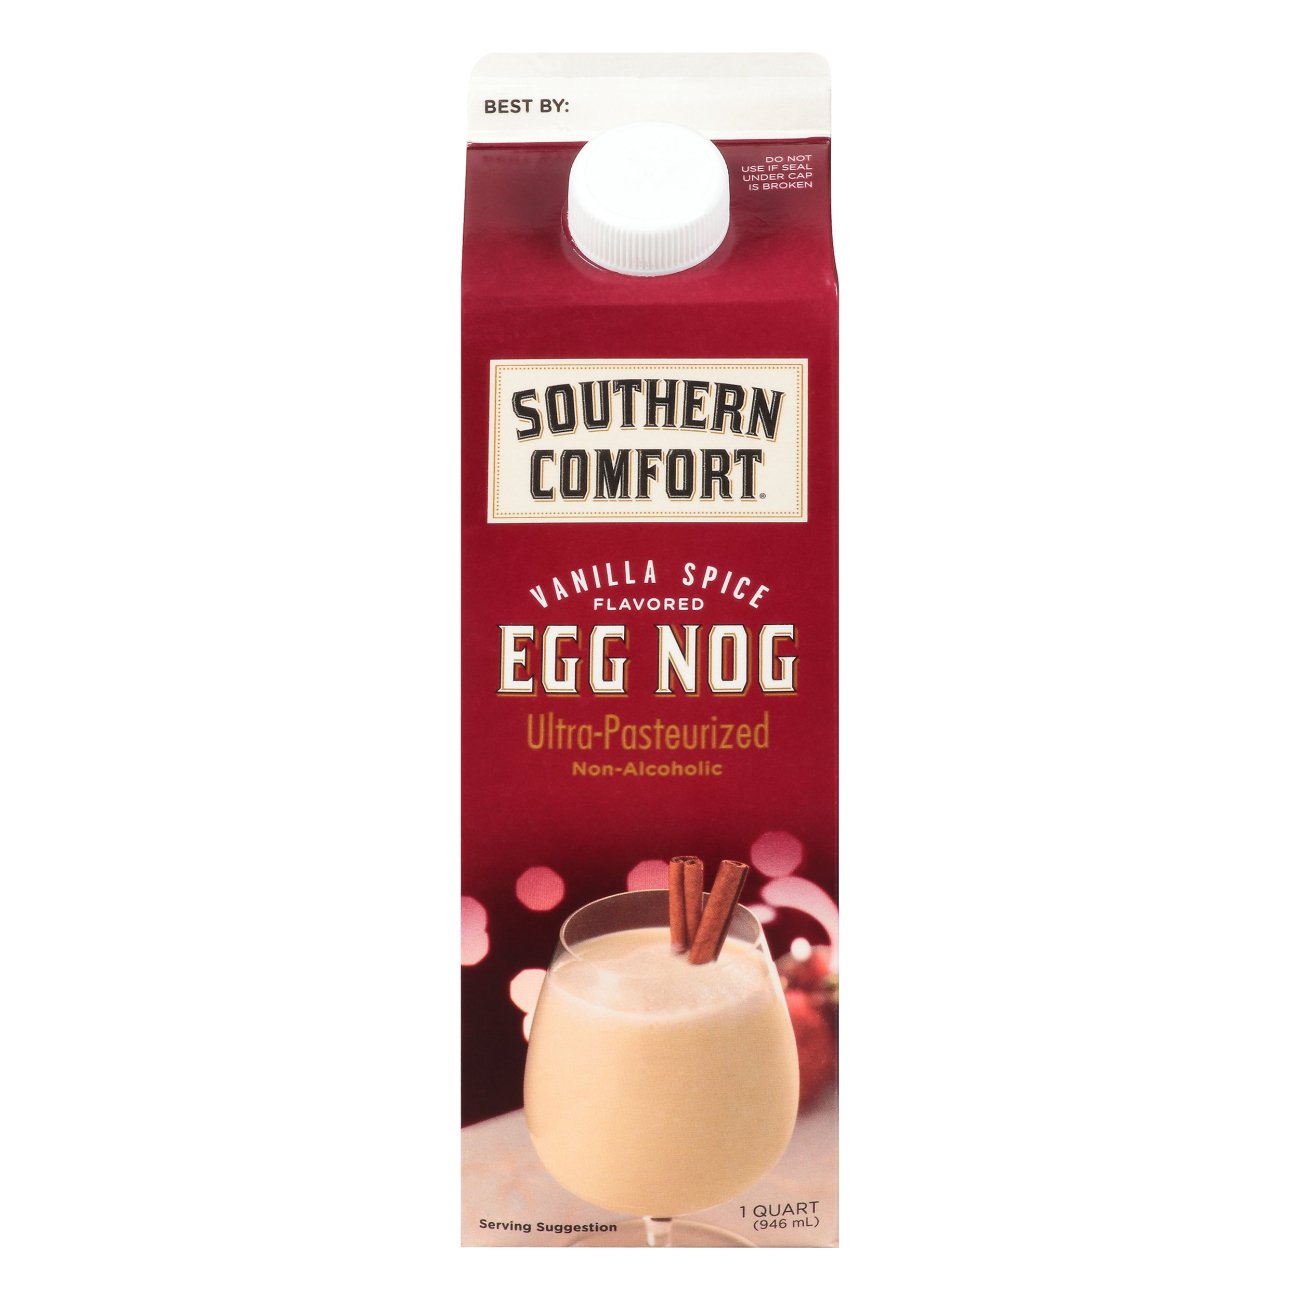 Southern Comfort Egg Nog : Vanilla Spice